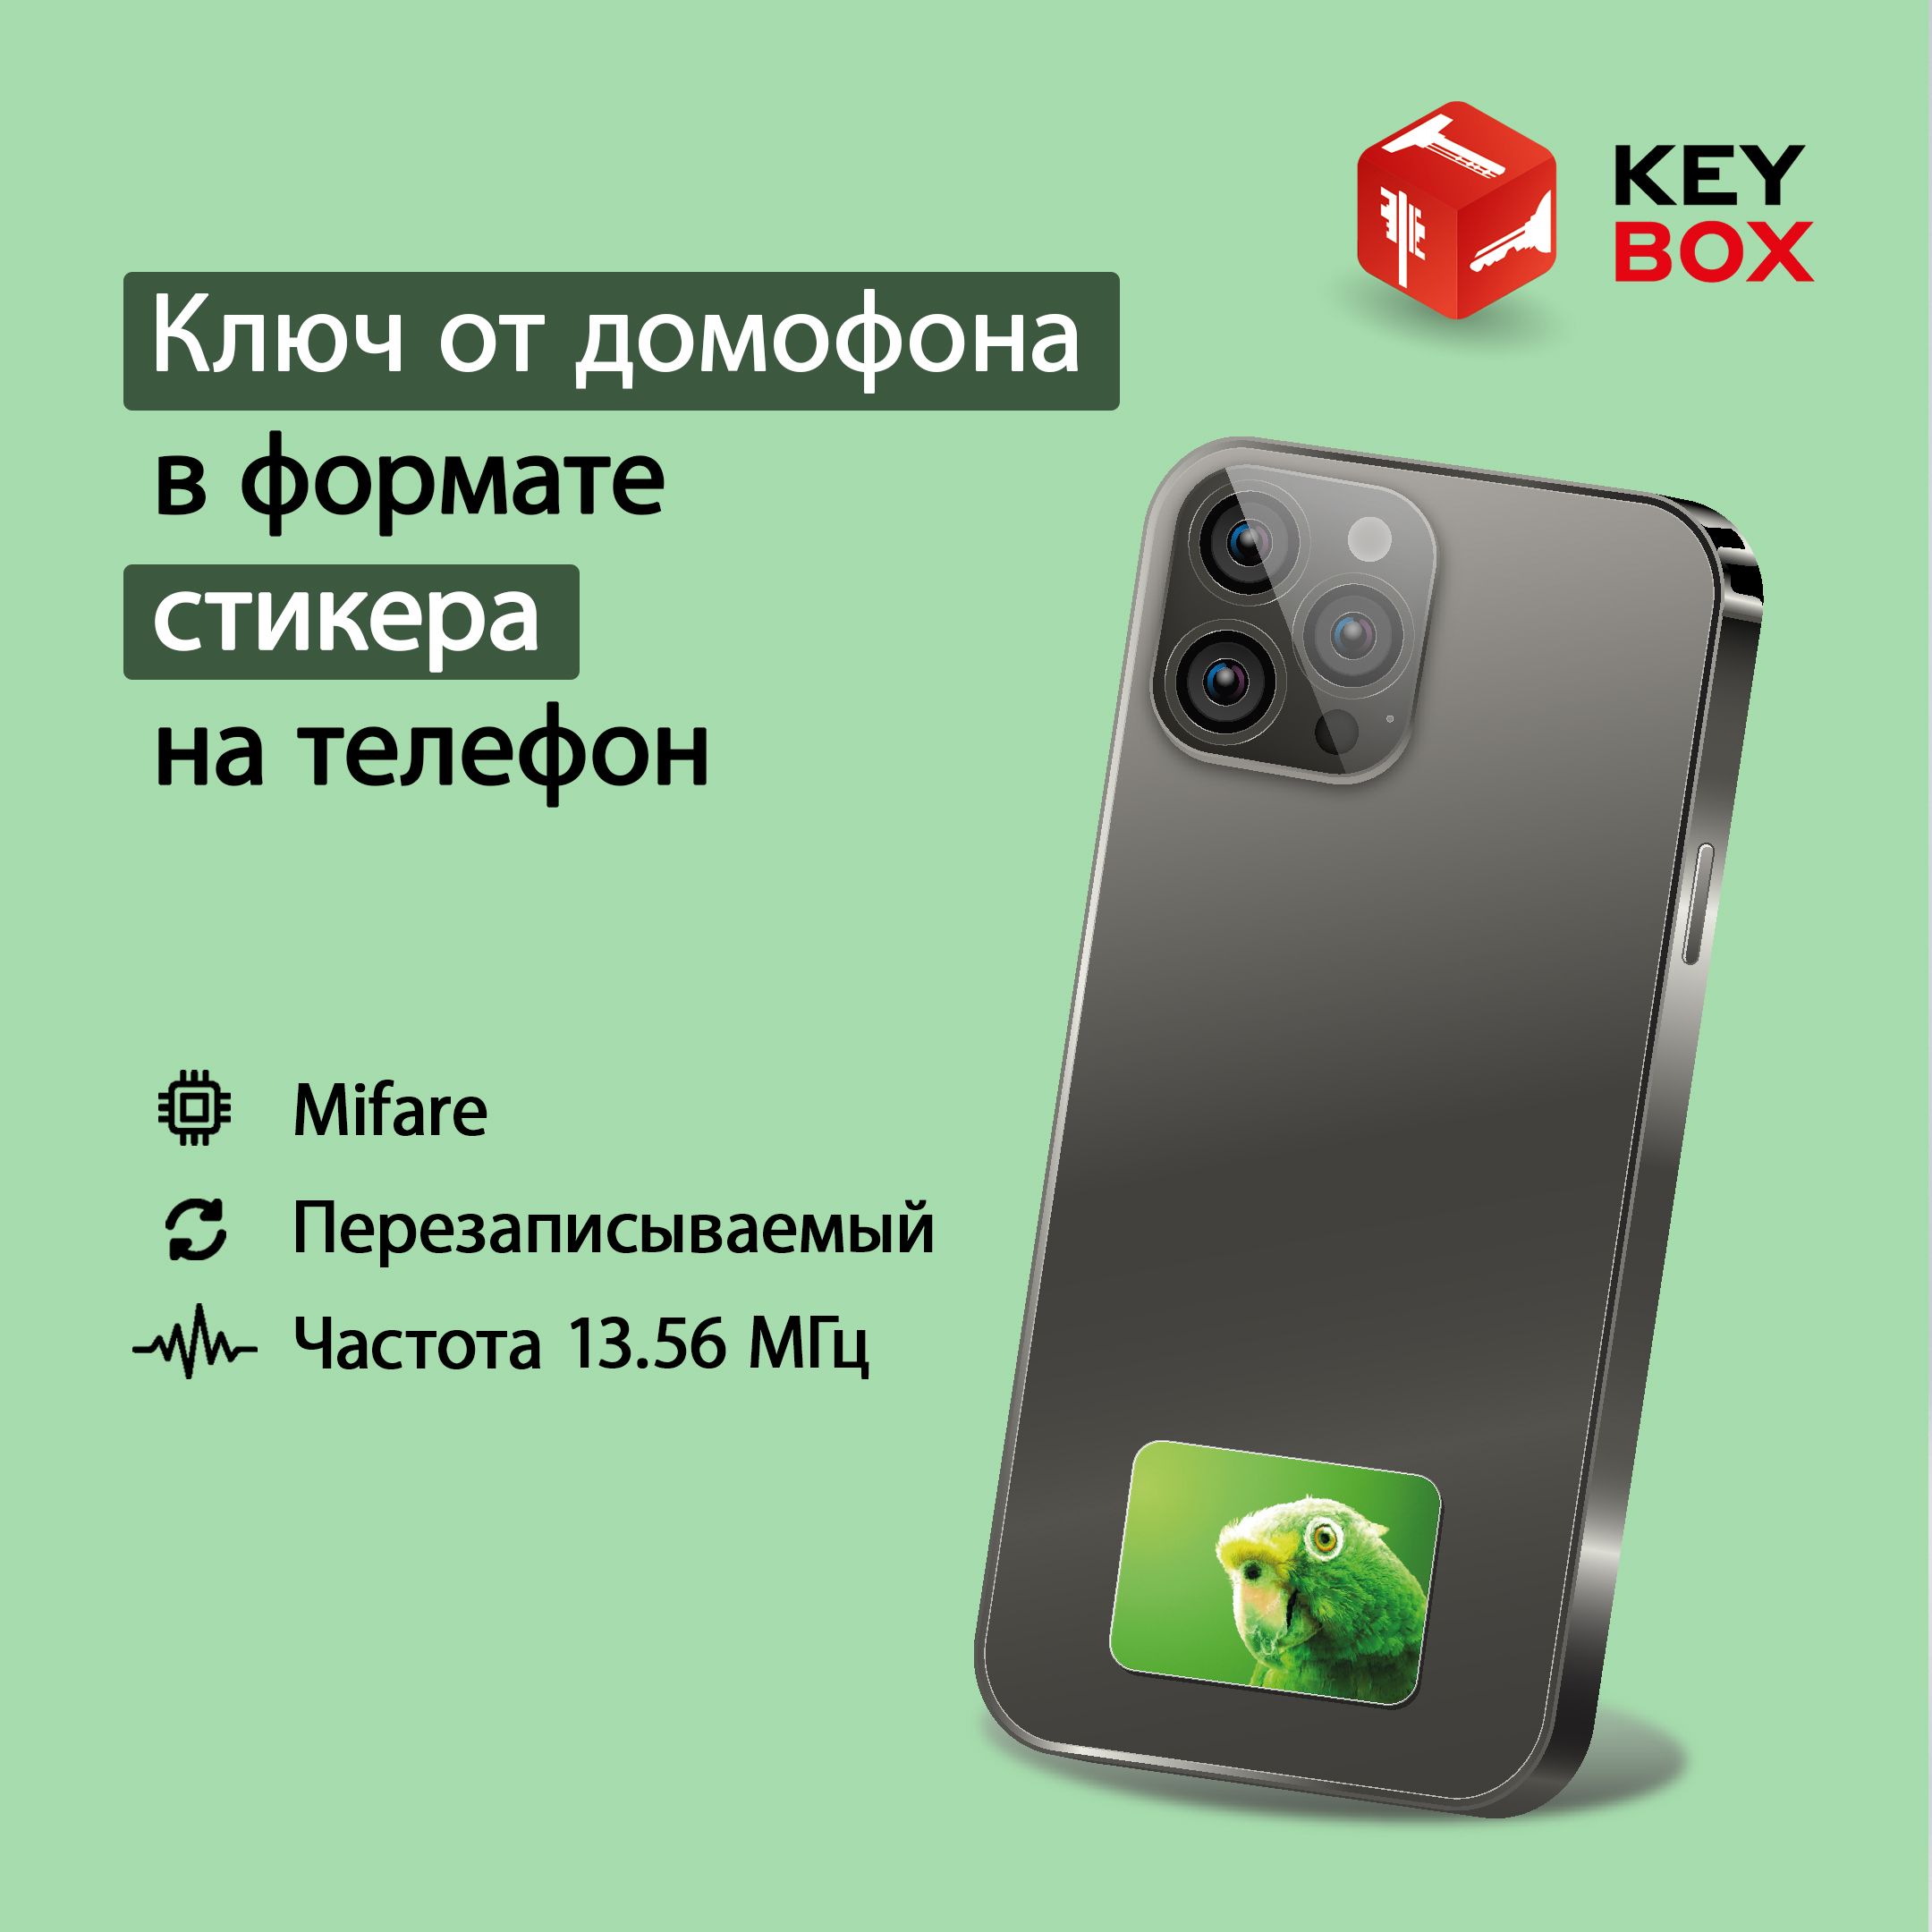 Ключ-стикер для домофона на телефон Keybox Mifare St011, Попугай телефон музыкальный